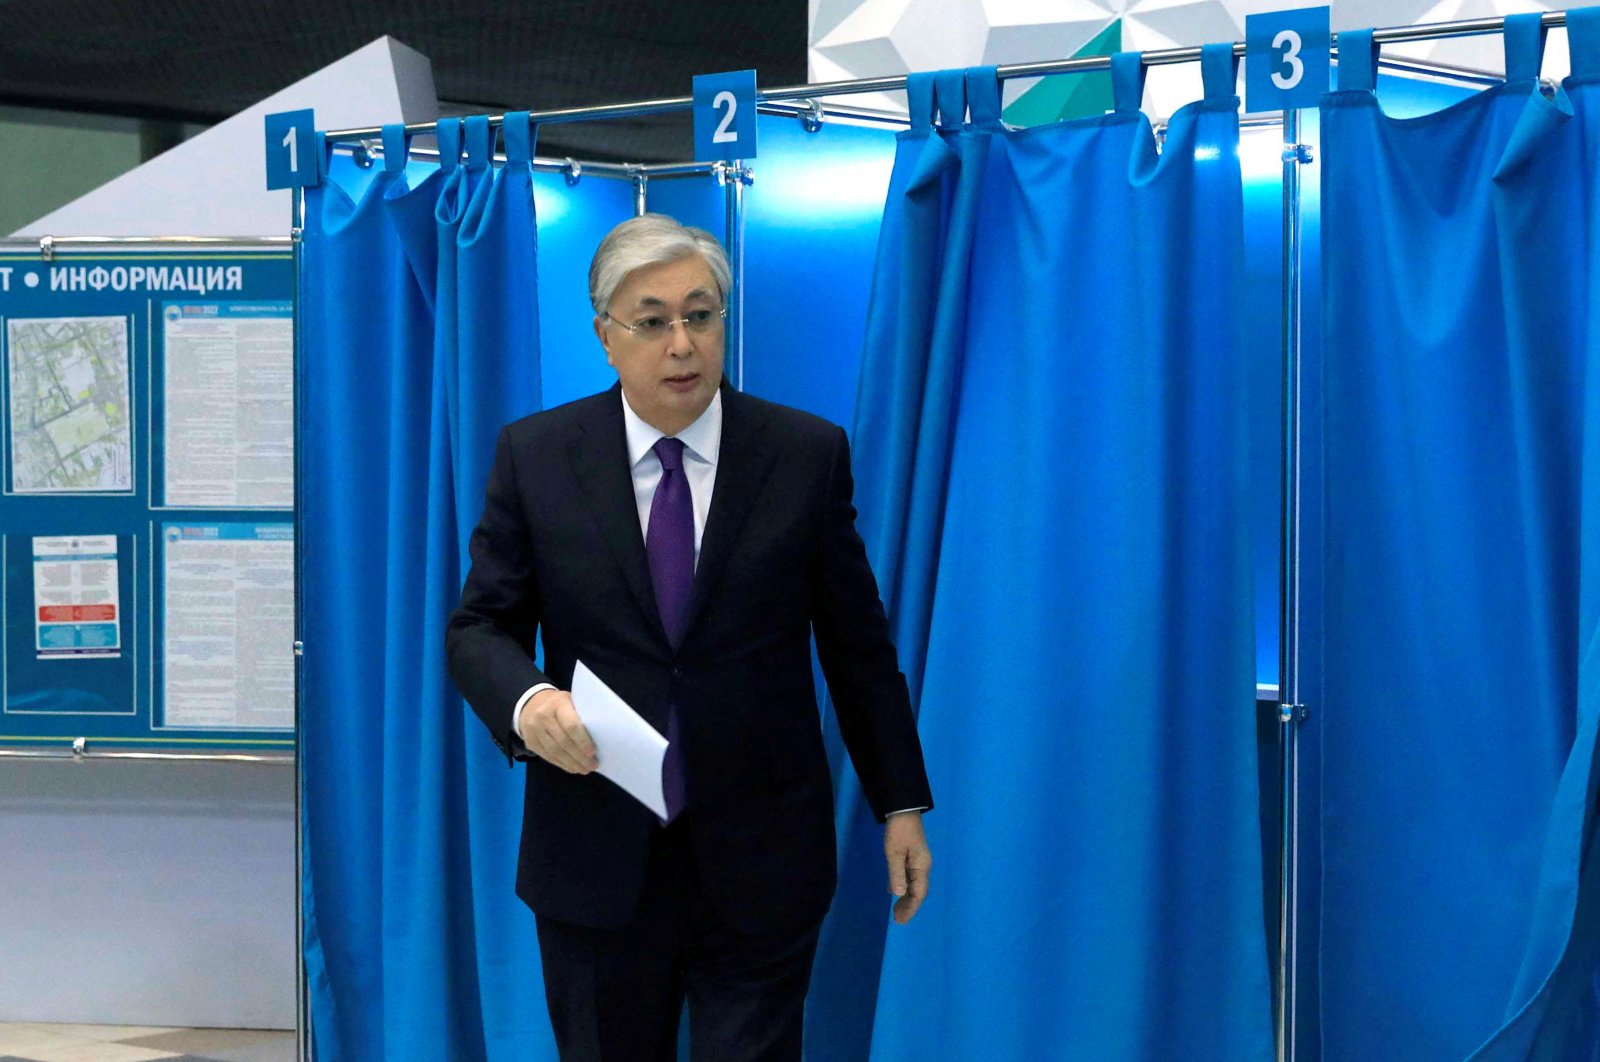 Presiden Kazakhstan Tokayev mengamankan pemilihan kembali dalam jajak pendapat cepat